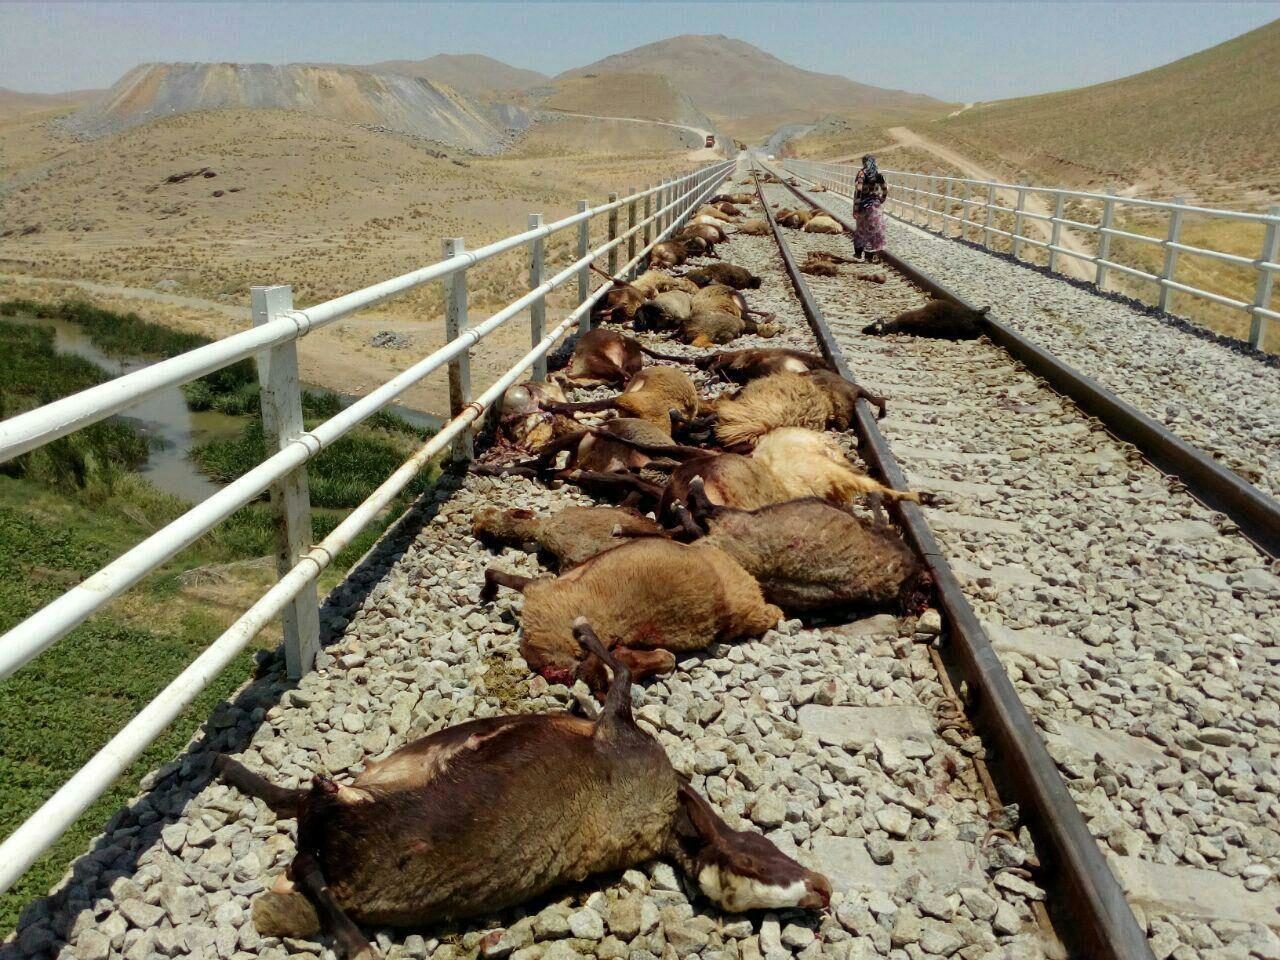 قطار شیراز-تهران، ۲۵ راس گوسفند را له کرد

